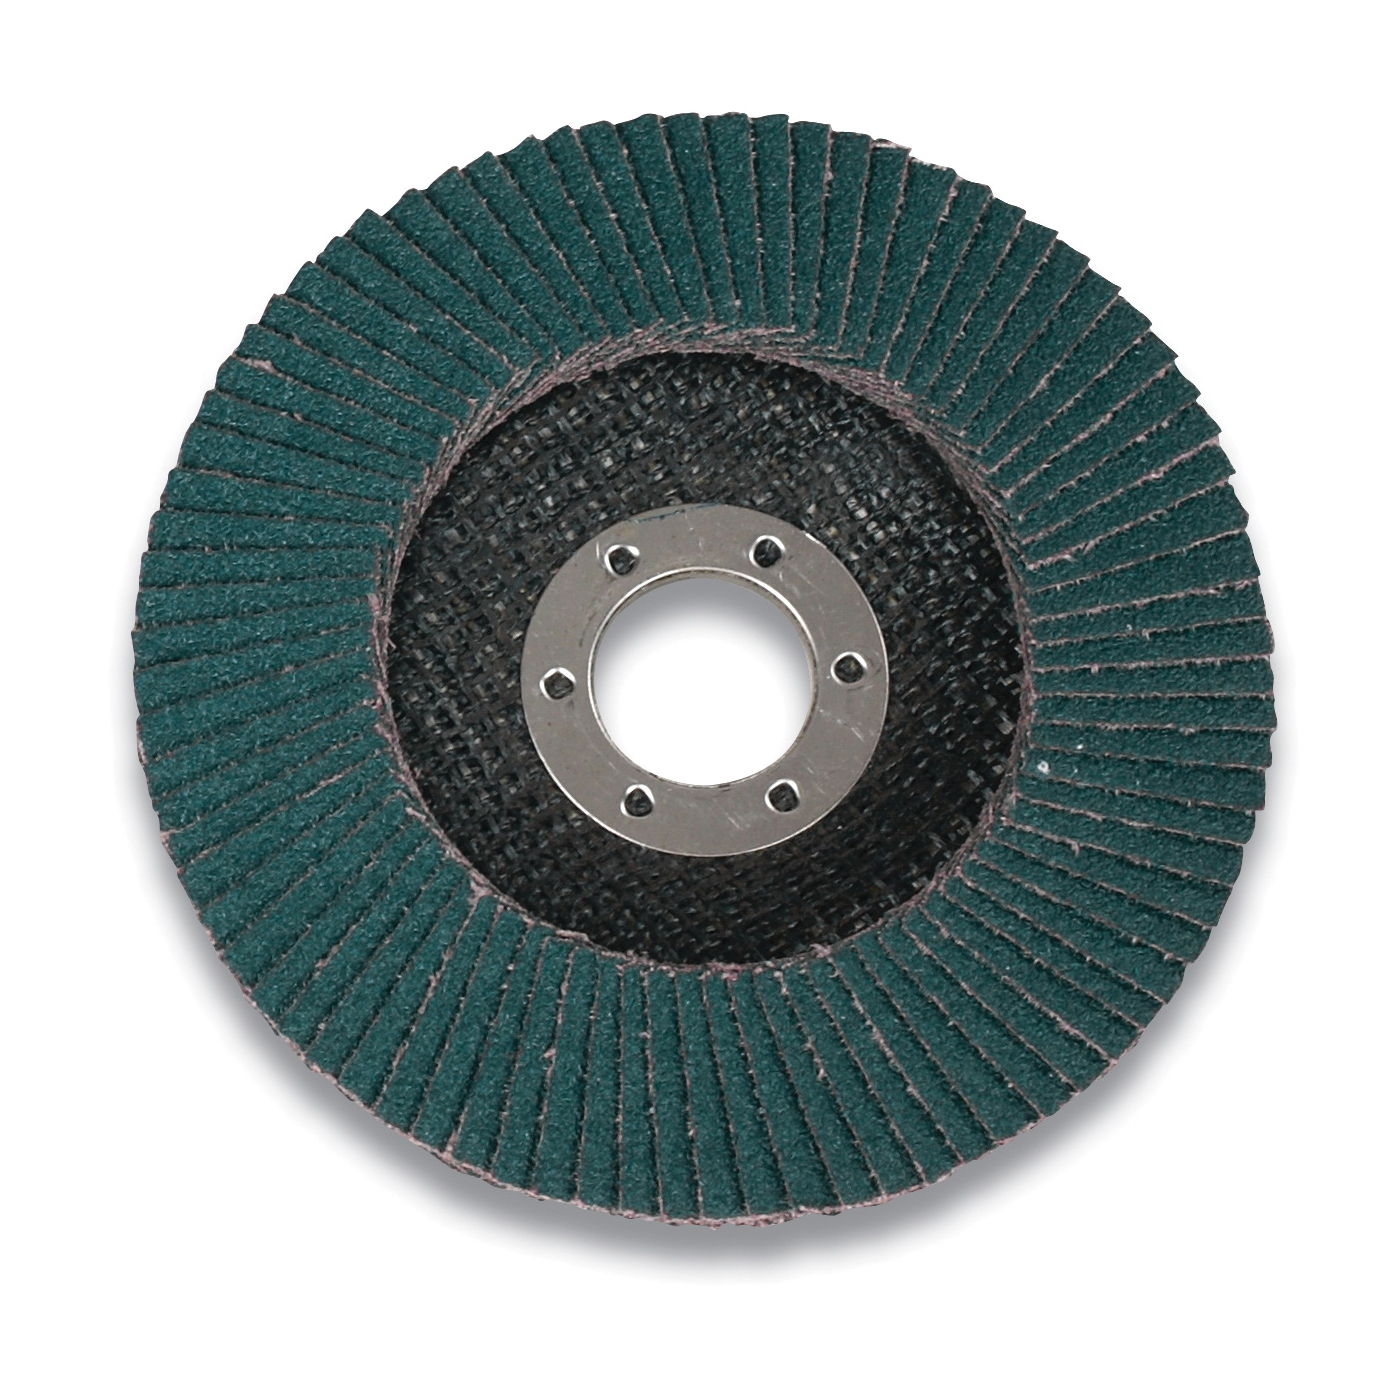 3M™ 051111-61191 947D Close Threaded Close Coated Flap Disc, 4-1/2 in Dia Disc, 40 Grit, Coarse Grade, Ceramic Abrasive, Type 27 Disc